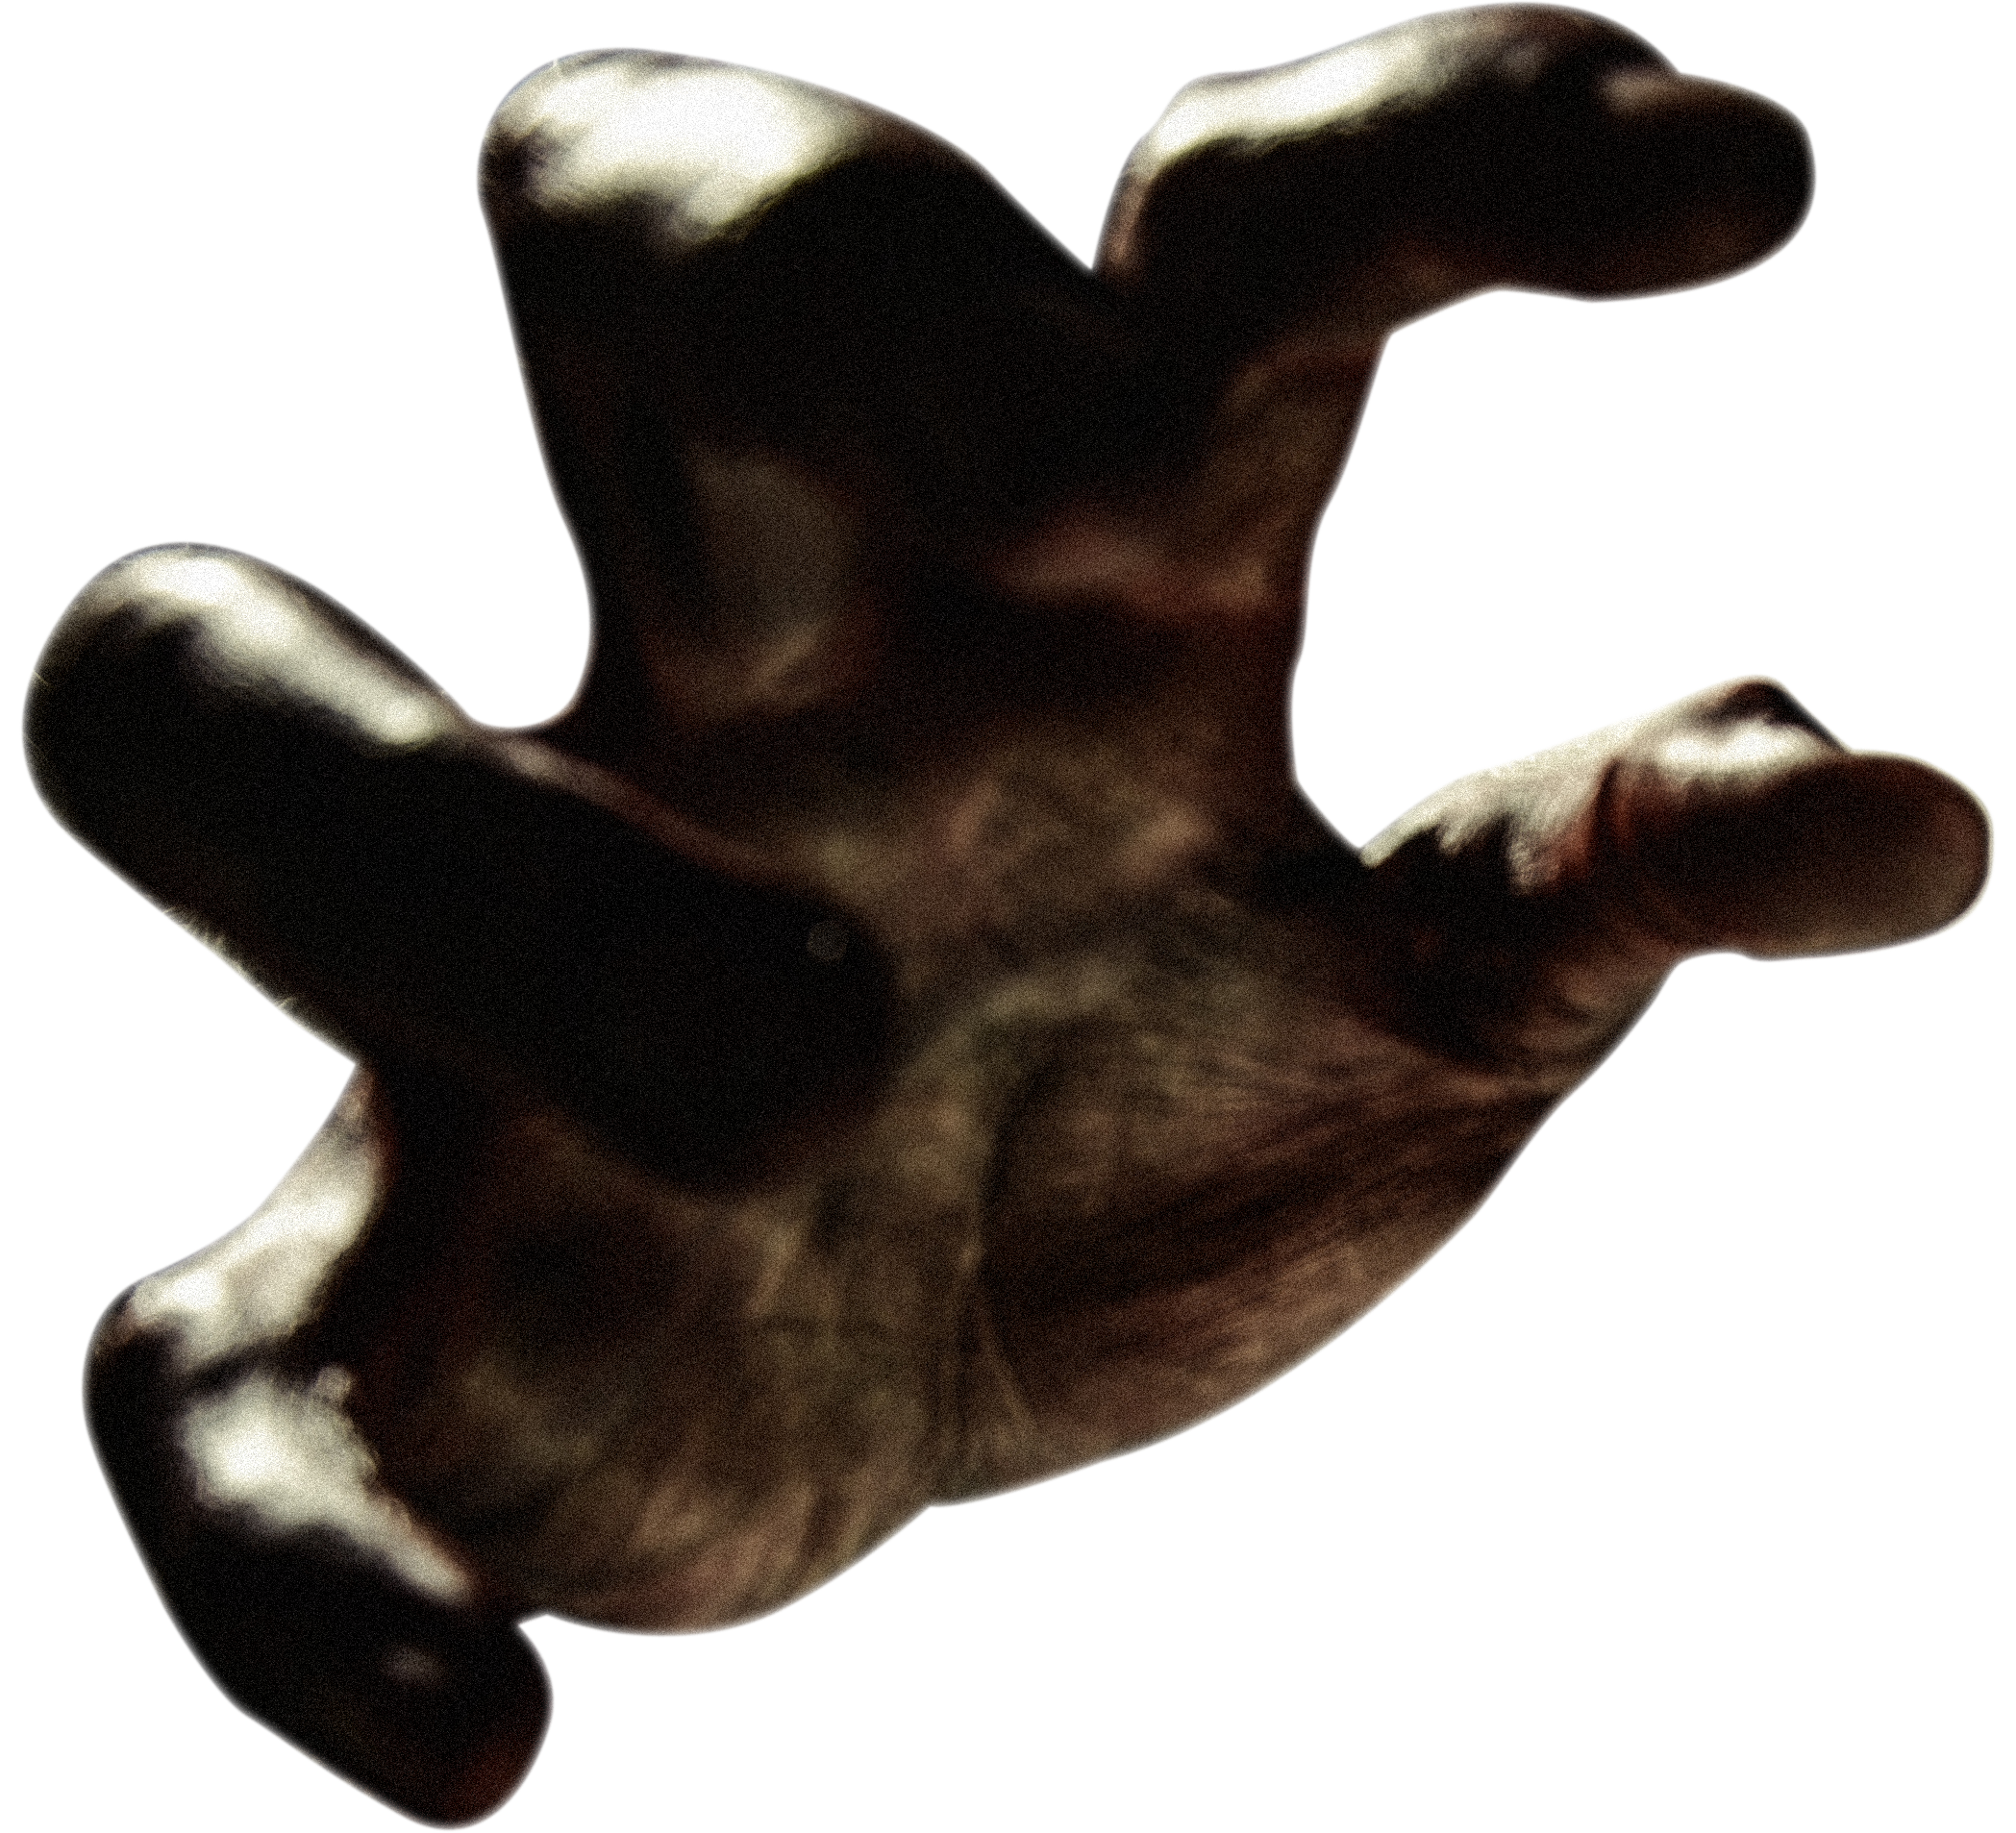 Zombie Hand